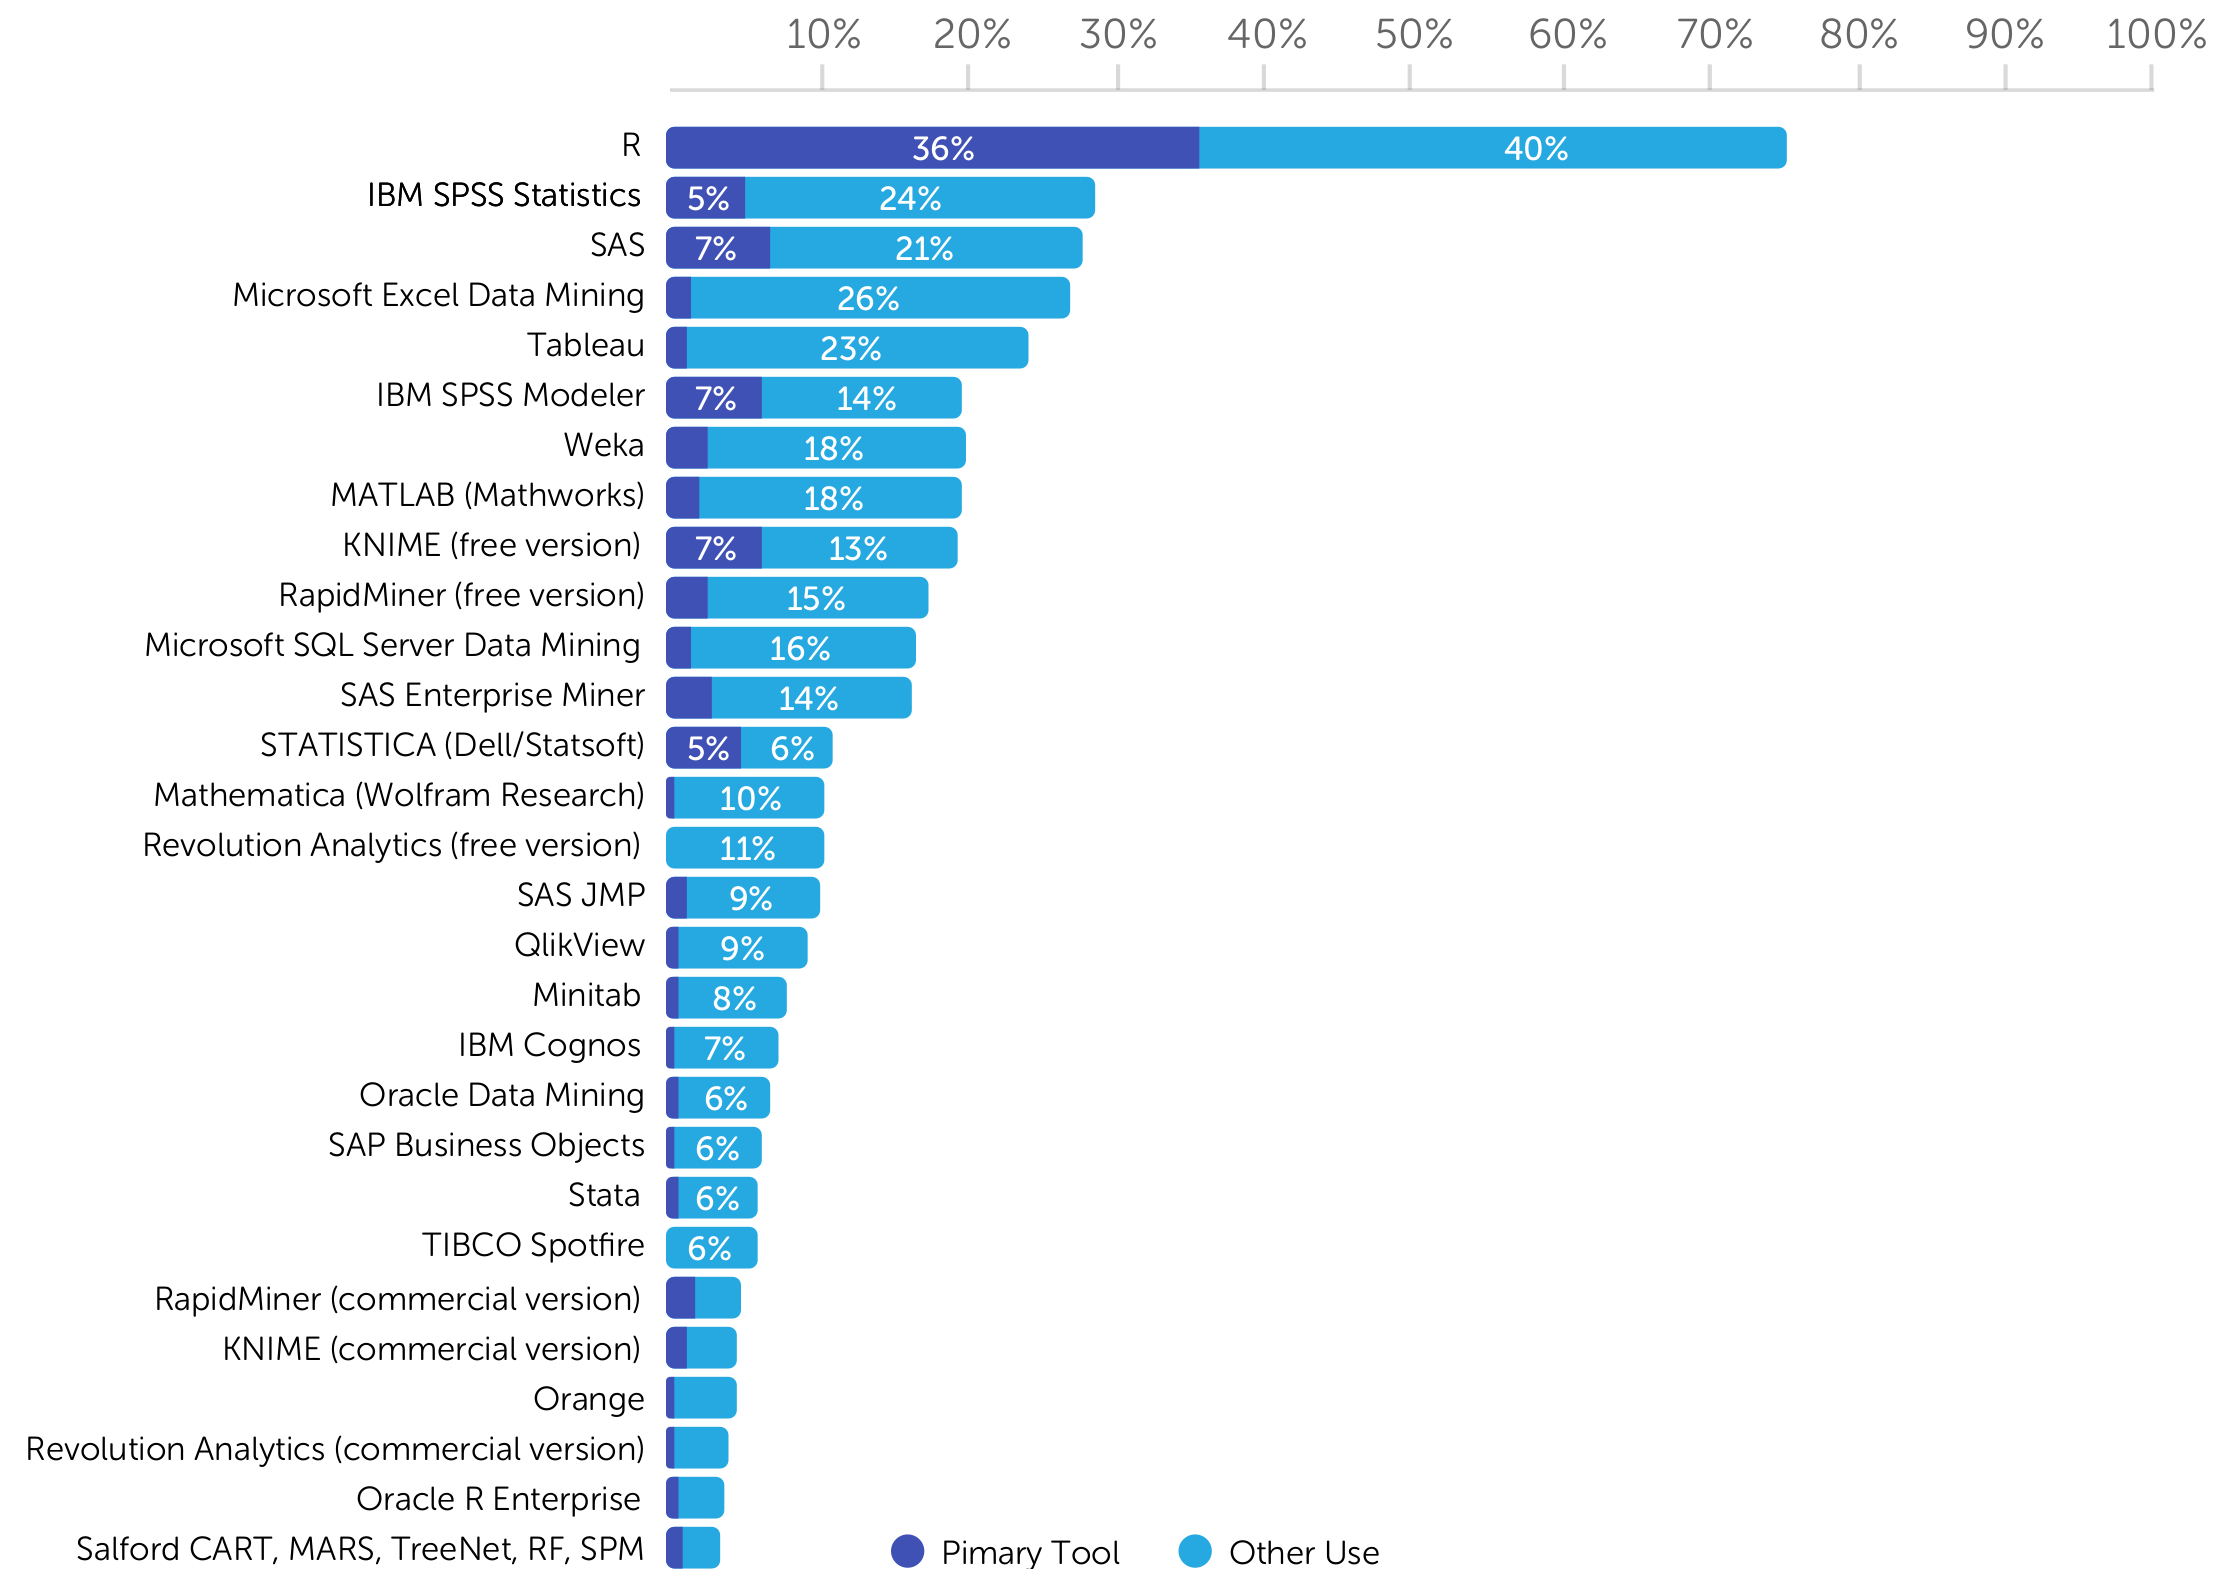 Analytické nástroje nejvíce používané respondnety Rexer Analytics Survey v roce 2015; každý respondent mohl zaškrtnout více nástrojů